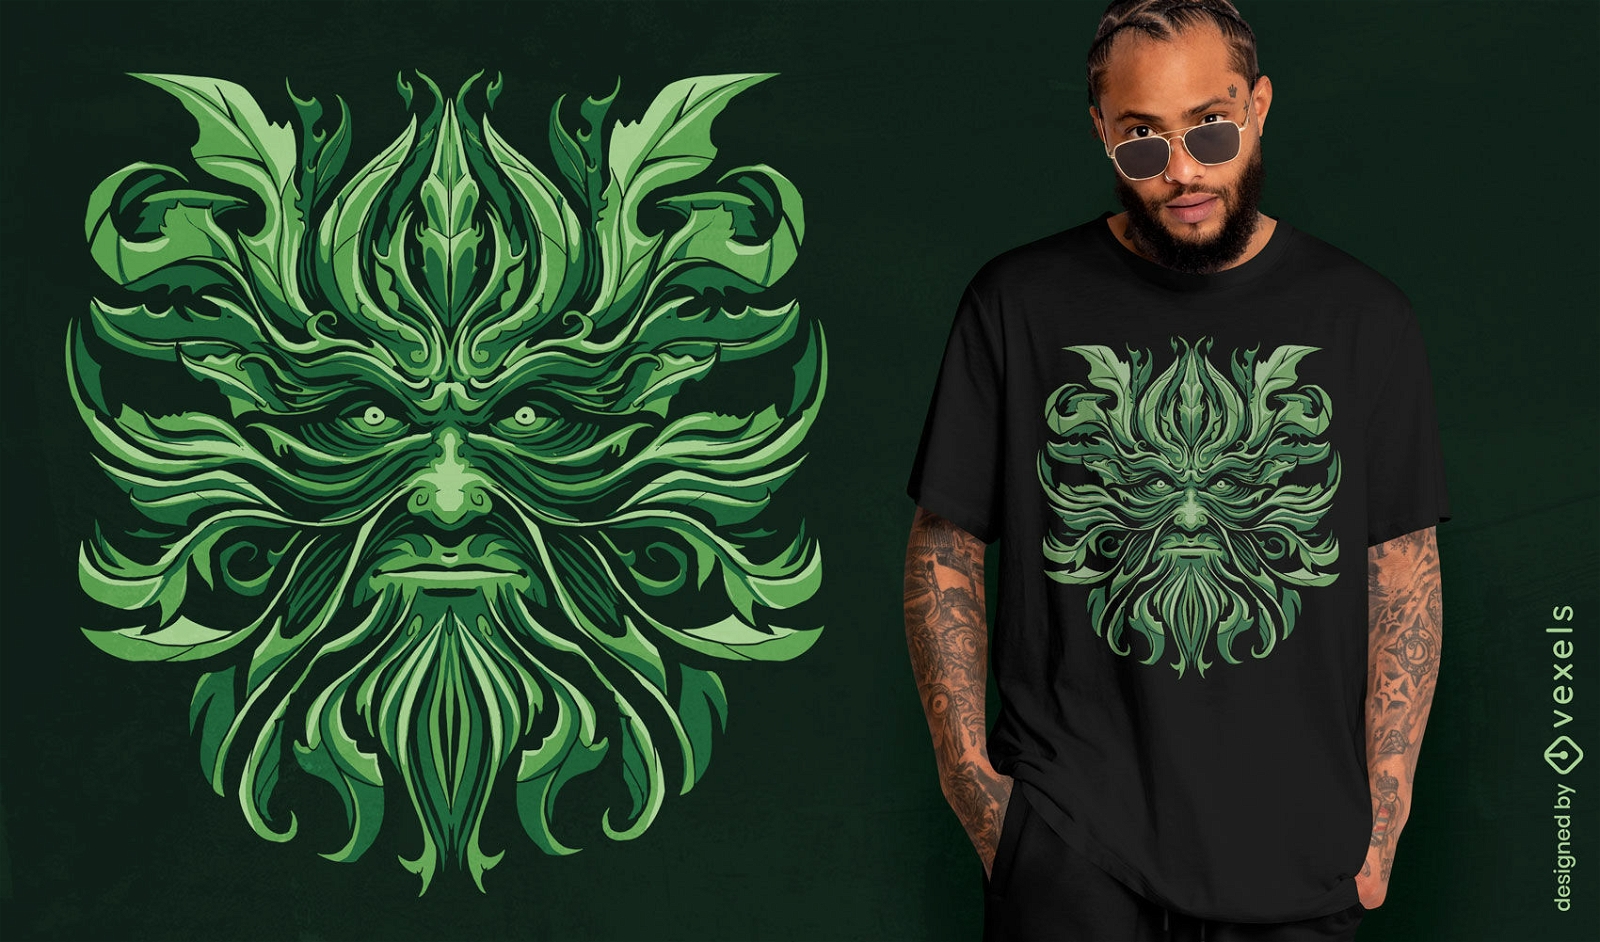 Diseño de camiseta de mitología celta de hombre verde.